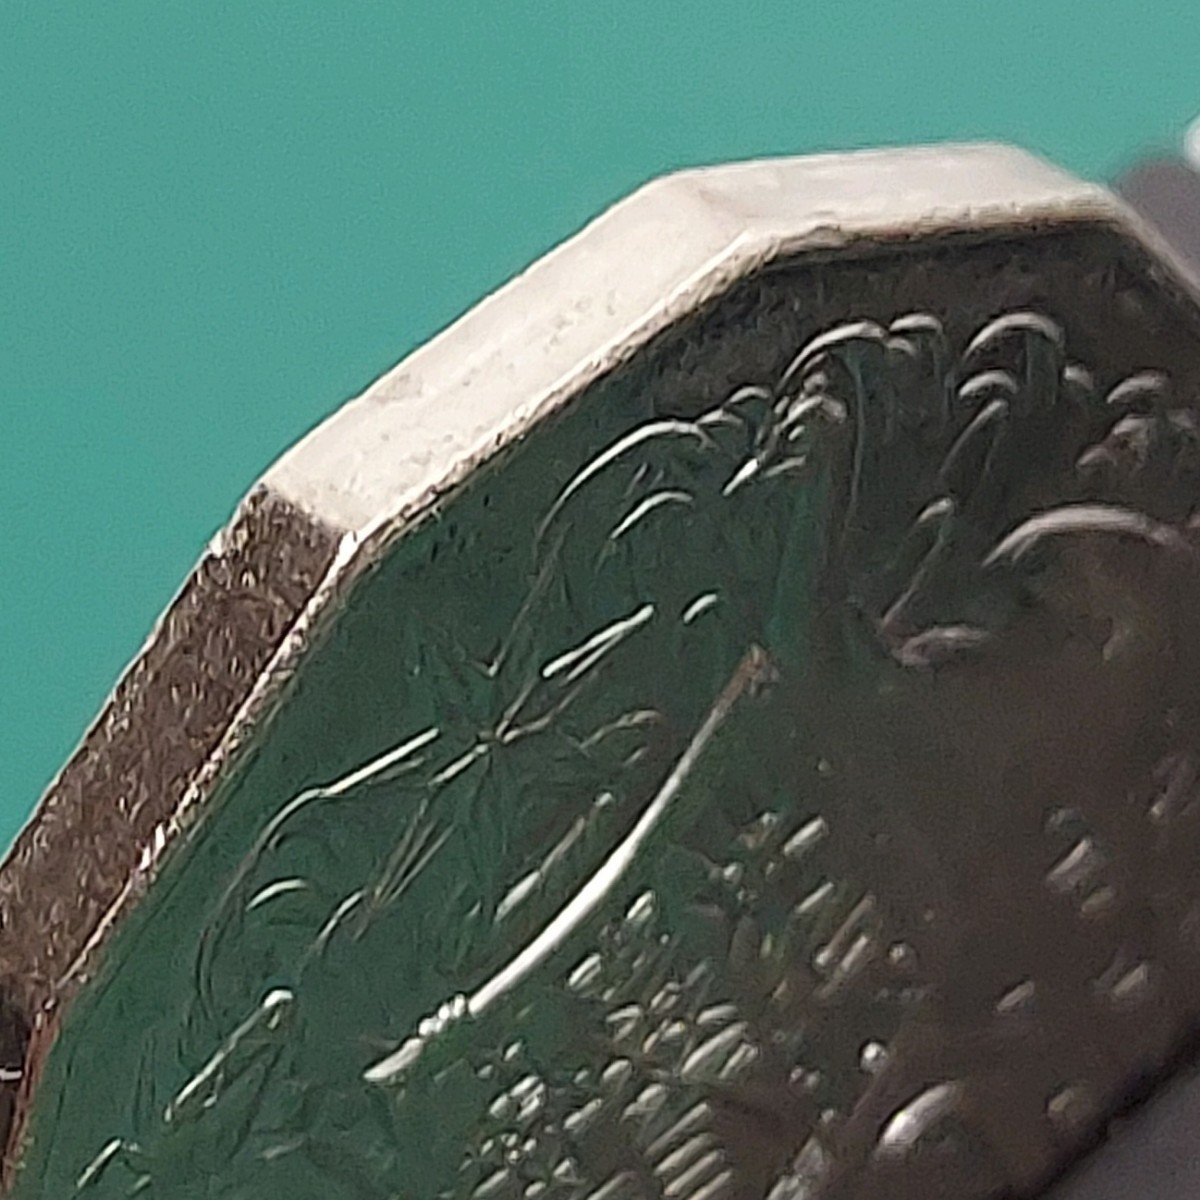 【60113】オーストラリア 50セント硬貨 1984年 約32.4×2.5㎜ 約15.54g カンガルー エミュー エリザベス二世 コレクション品の画像5